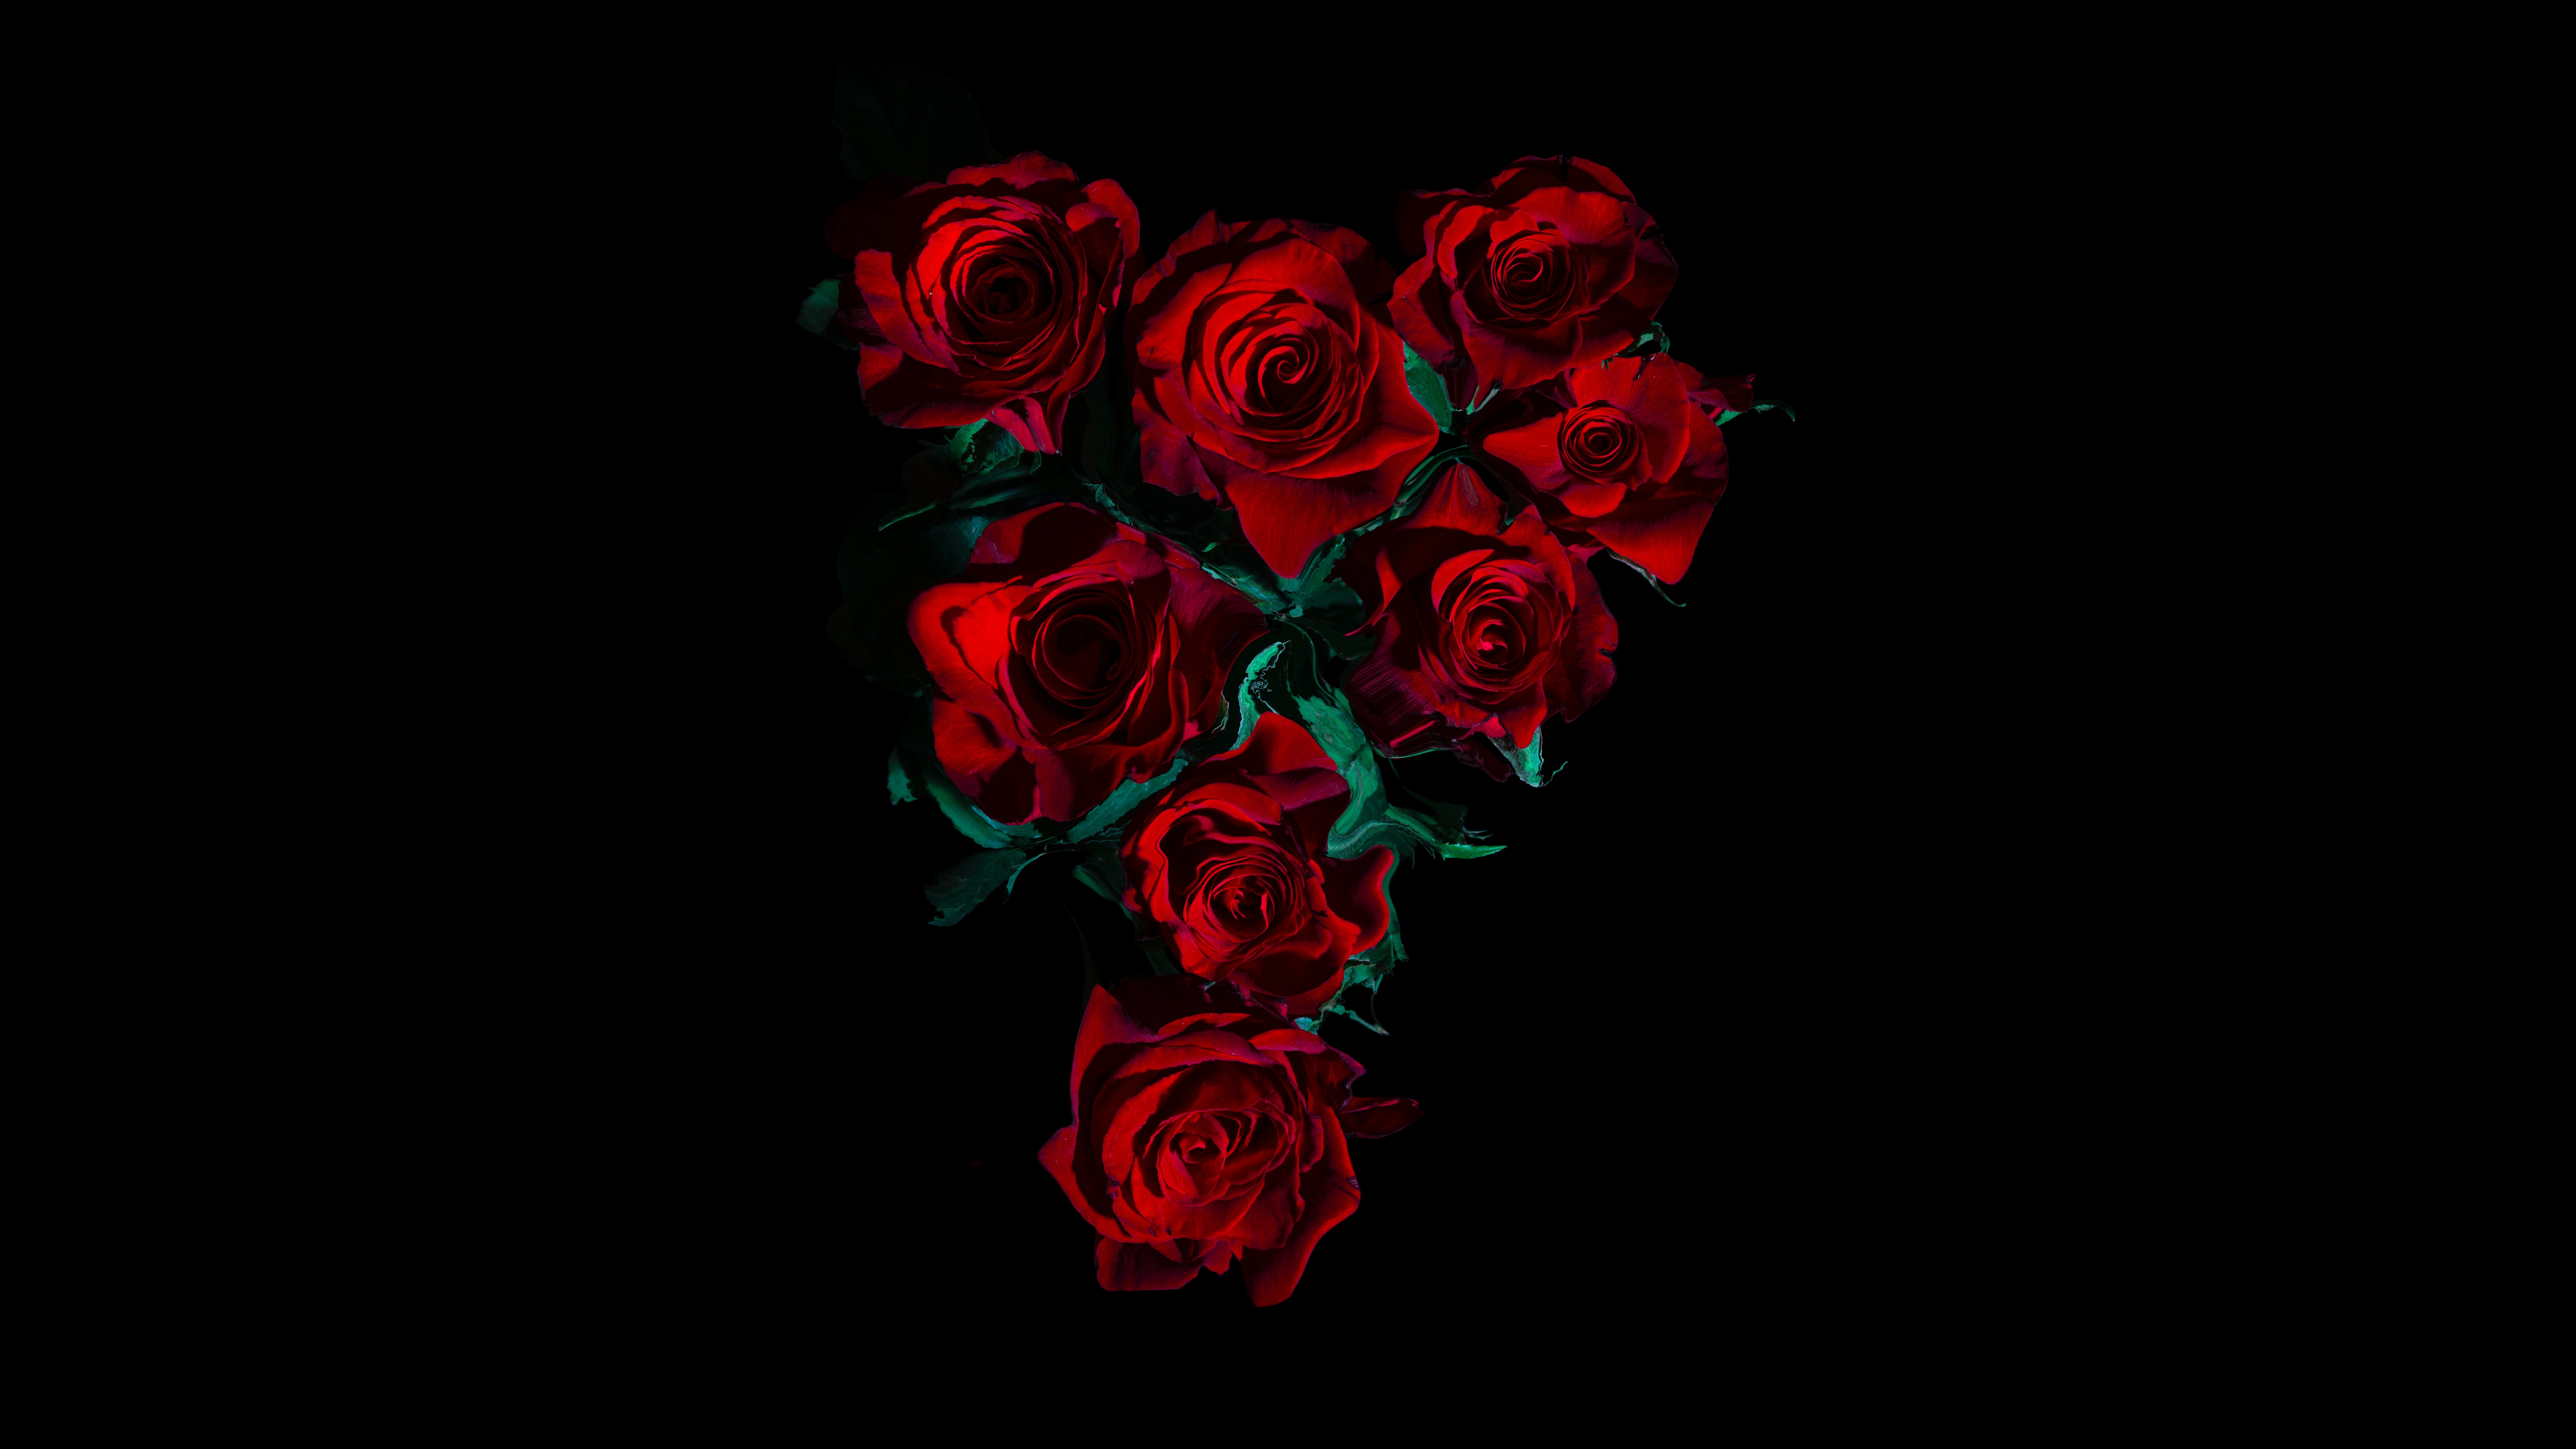 Hoa hồng là biểu tượng cho sự tình yêu và sự đam mê. Xem hình ảnh hoa hồng để trở nên lãng mạn và cảm nhận sự đẹp đẽ của loài hoa này.